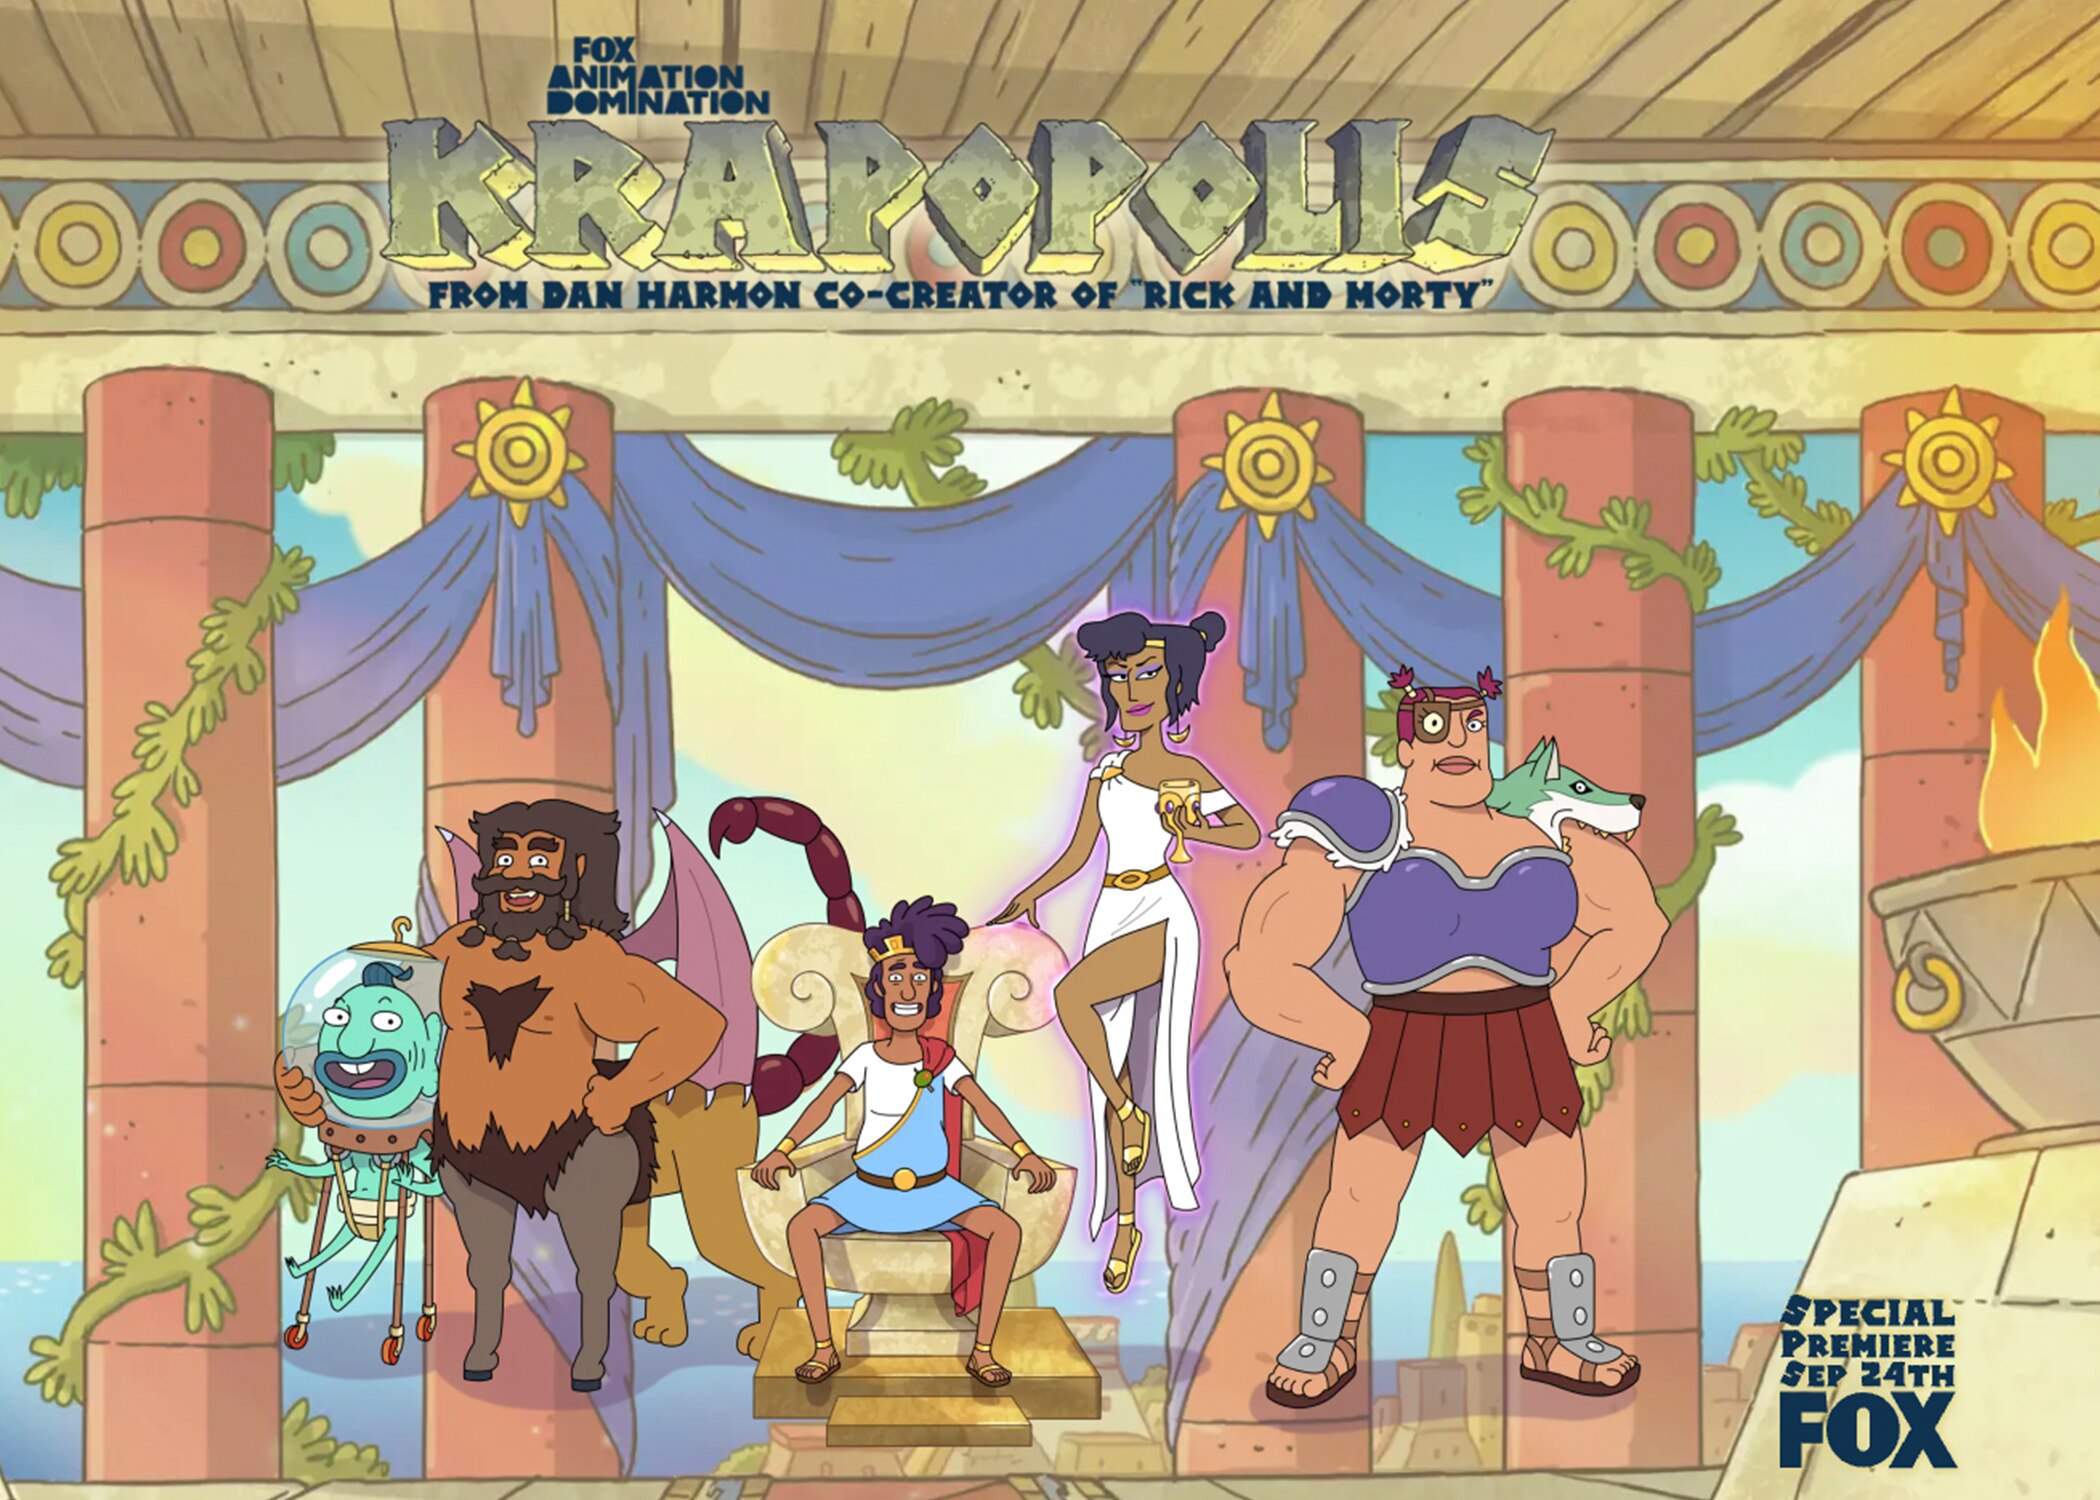 FOX to Debut Animated Comedy "Krapopolis" on Sunday, Sept. 24